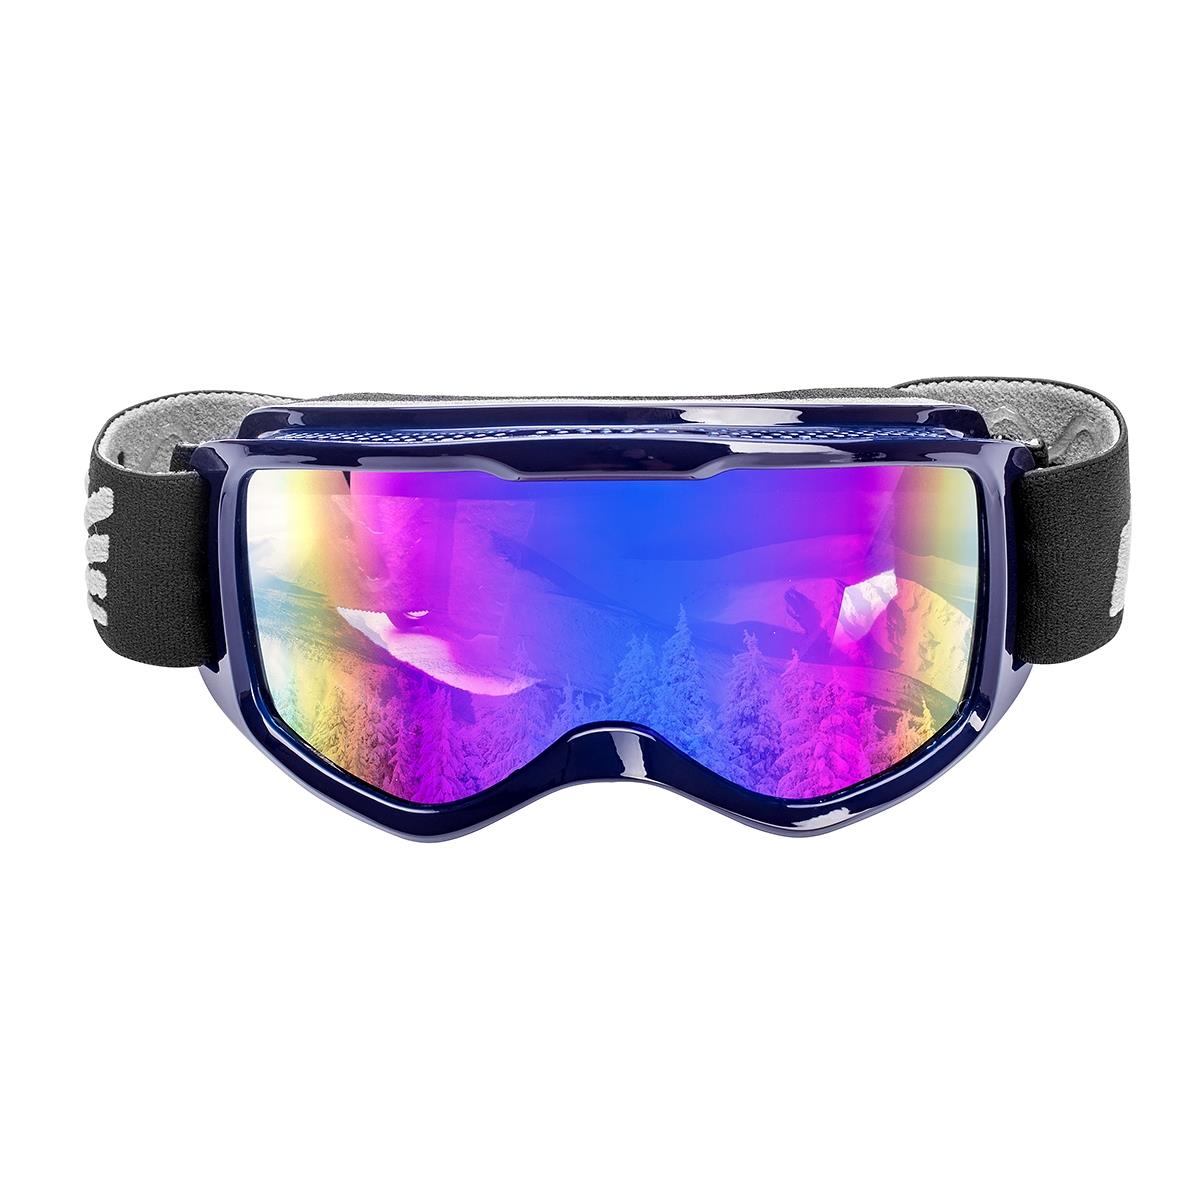 Очки горнолыжные HS-HX-040 Helios очки для плавания взрослые uv защита